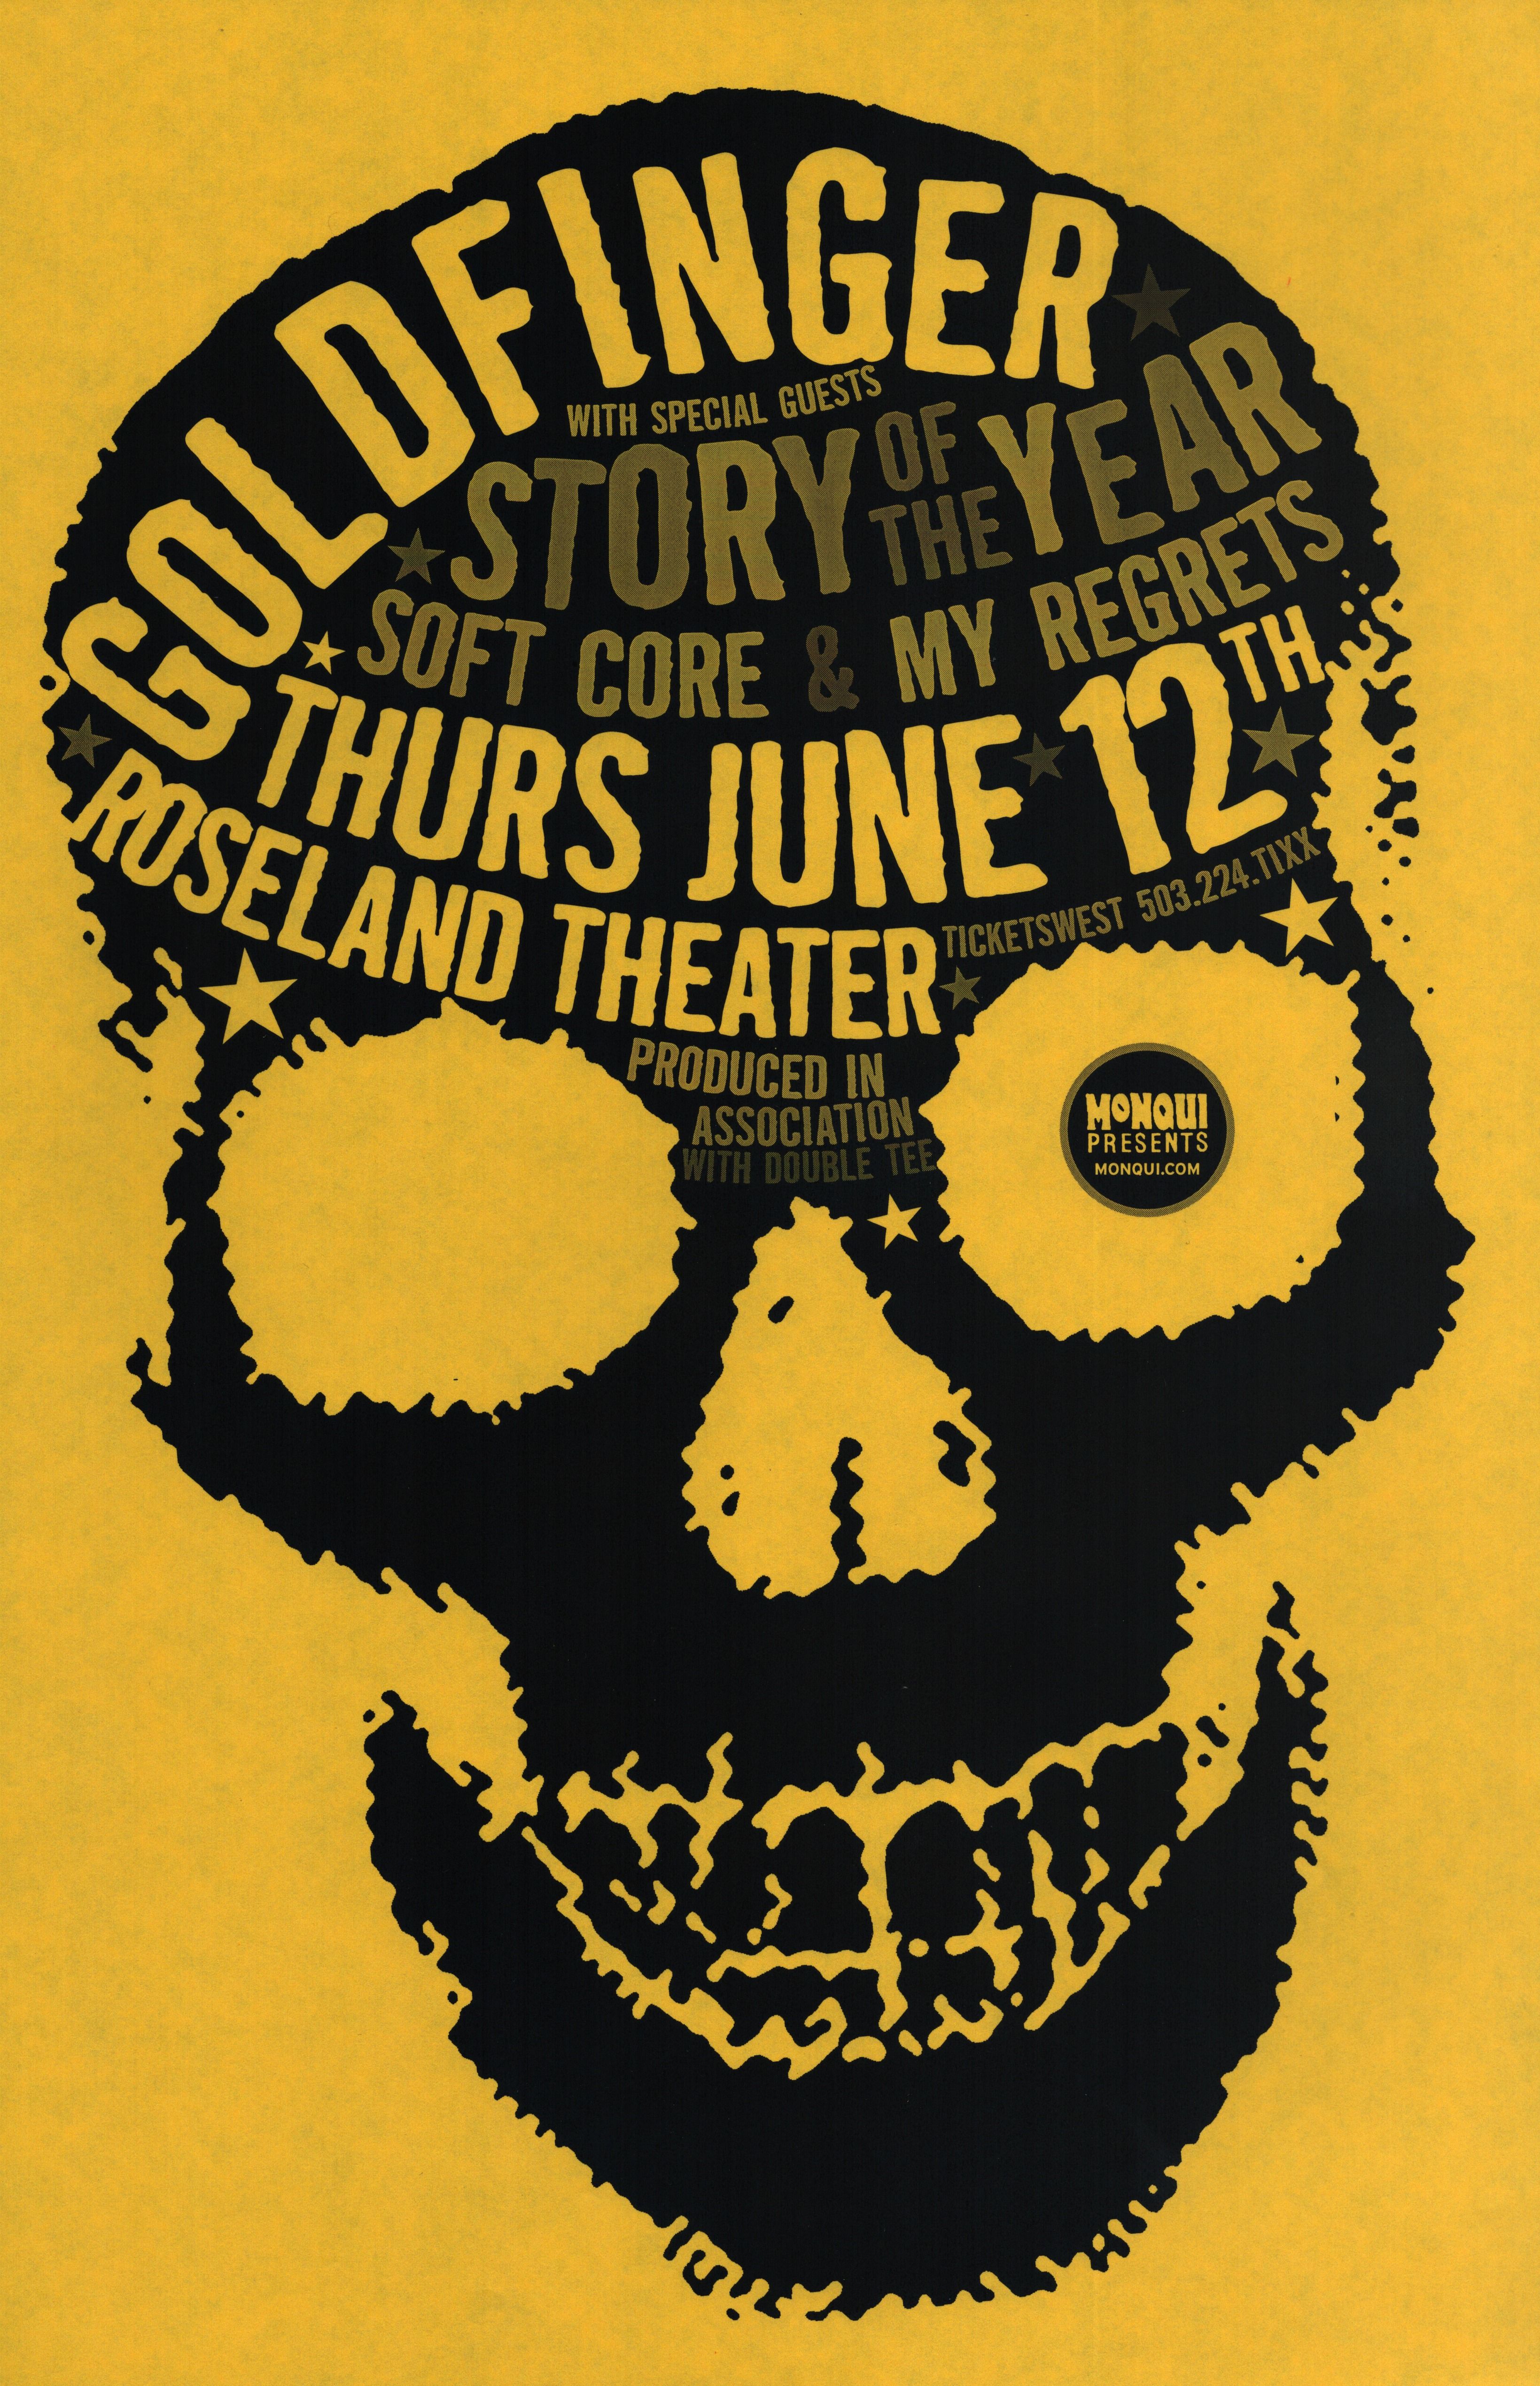 MXP-17.1 Goldfinger Roseland Theater 2003 Concert Poster